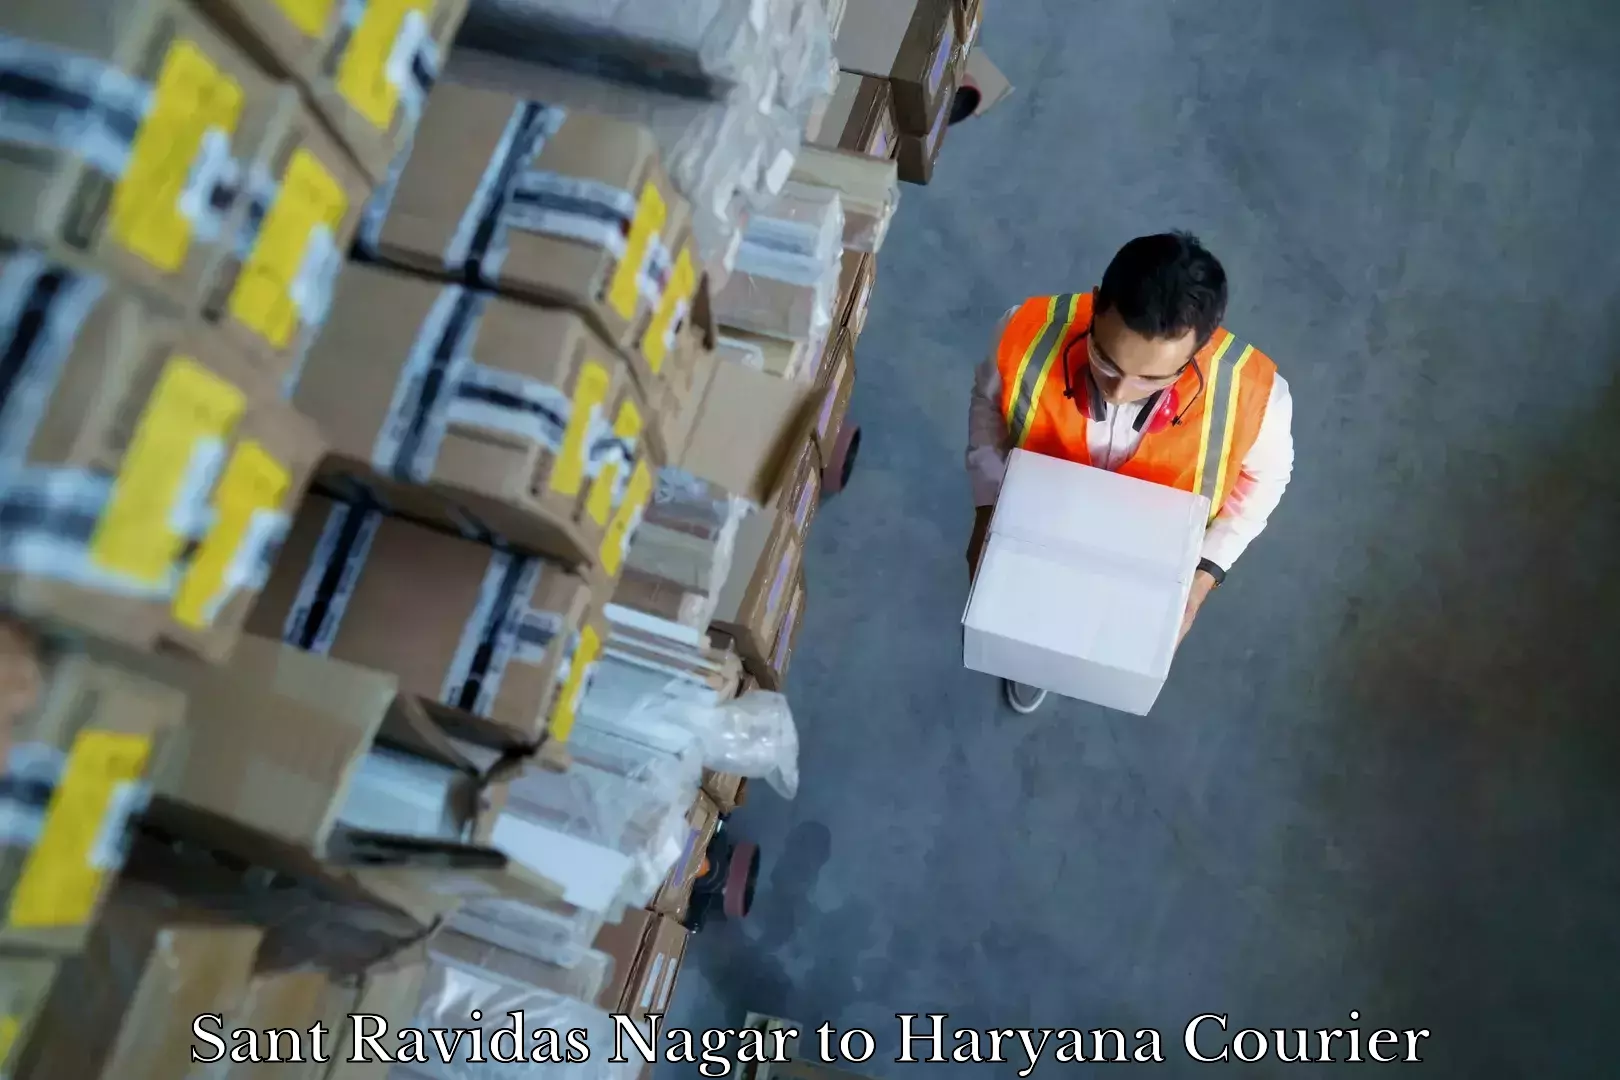 Reliable movers Sant Ravidas Nagar to NCR Haryana